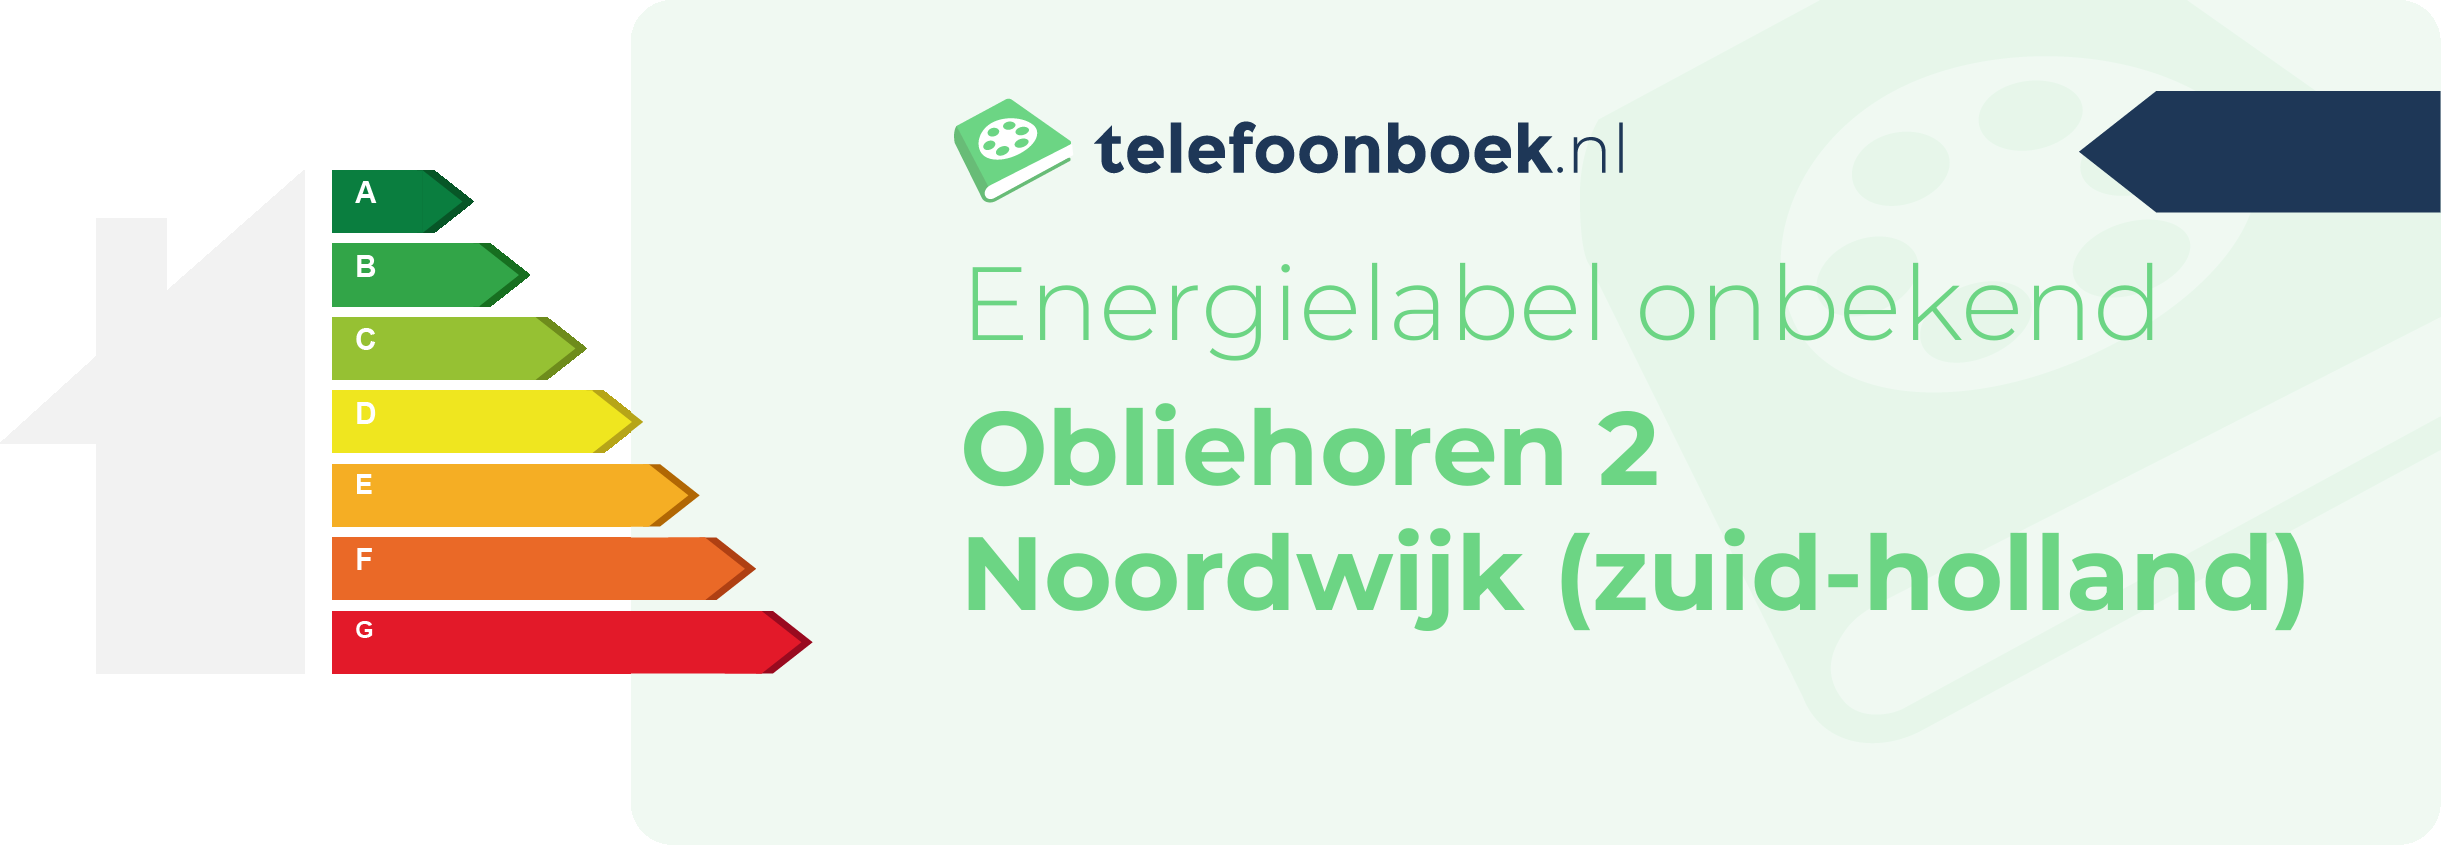 Energielabel Obliehoren 2 Noordwijk (Zuid-Holland)